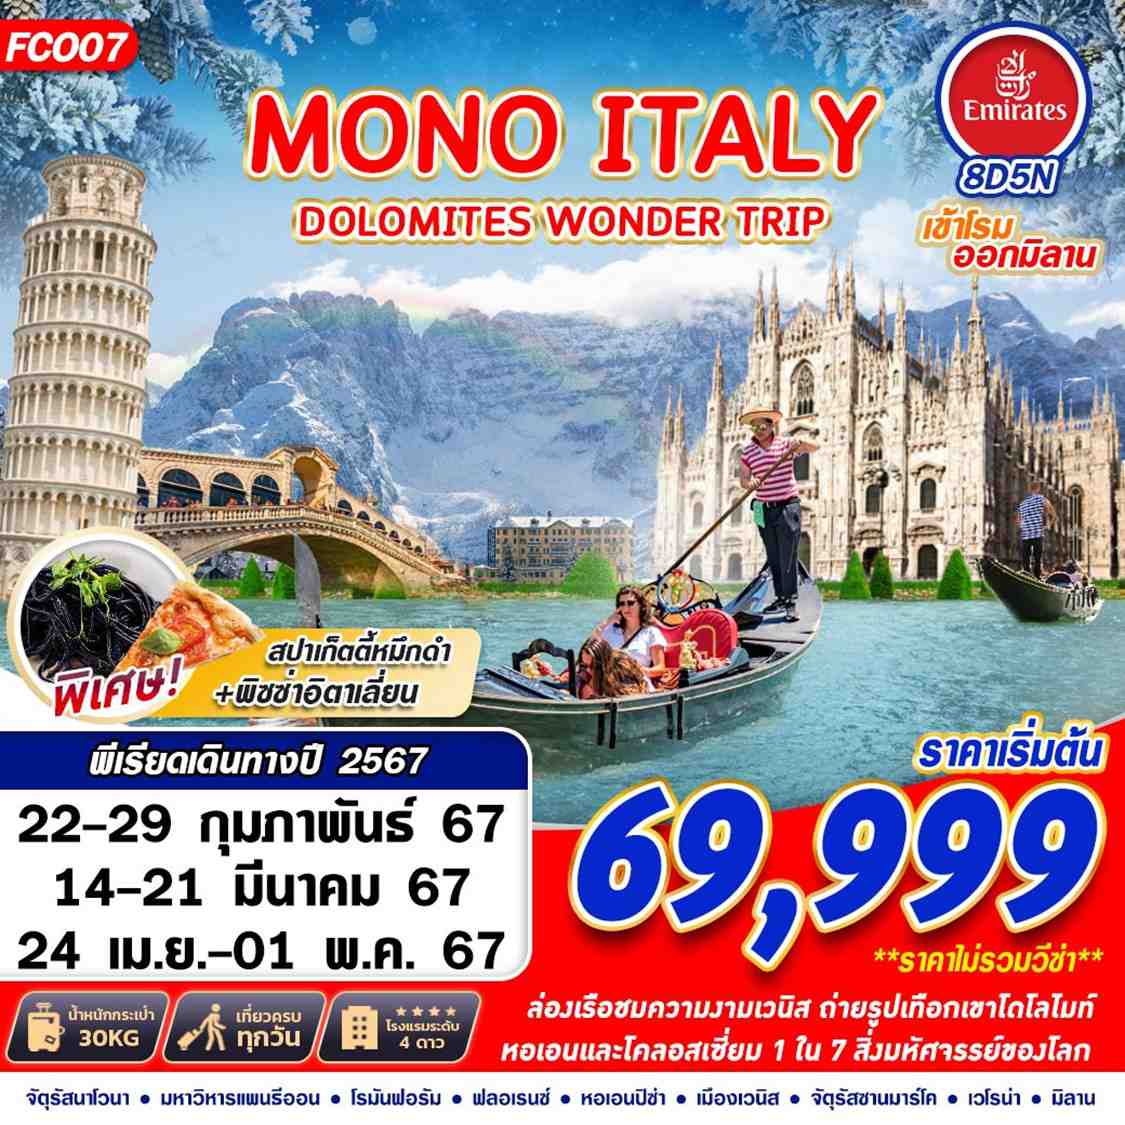 MONO ITALY DOLOMITES WONDER TRIP 8D5N BY EK